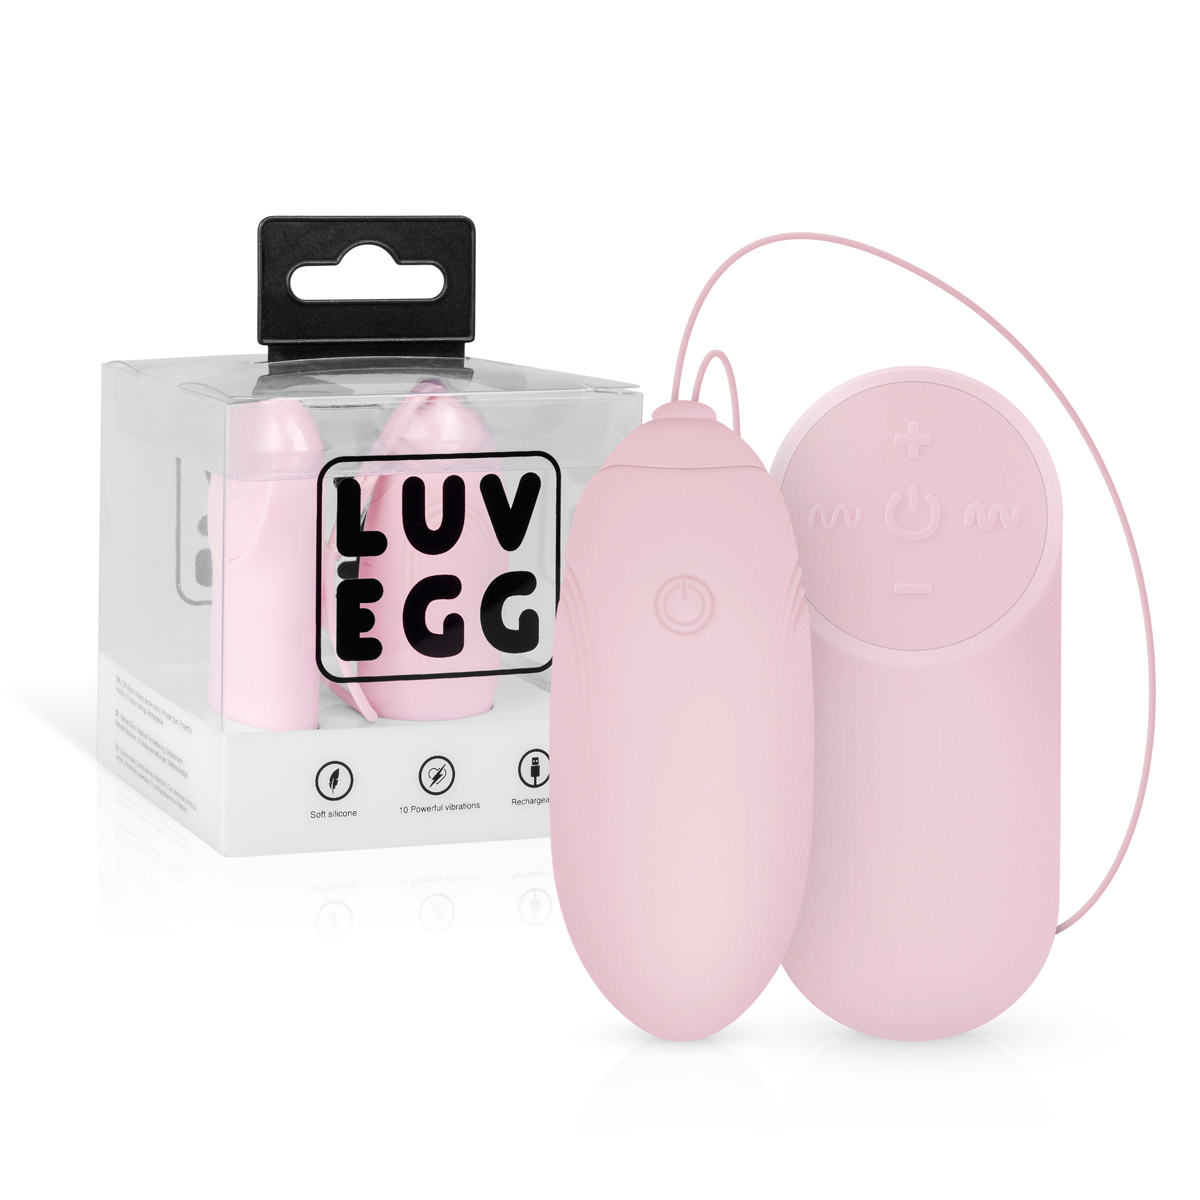 luv egg tros vibrator